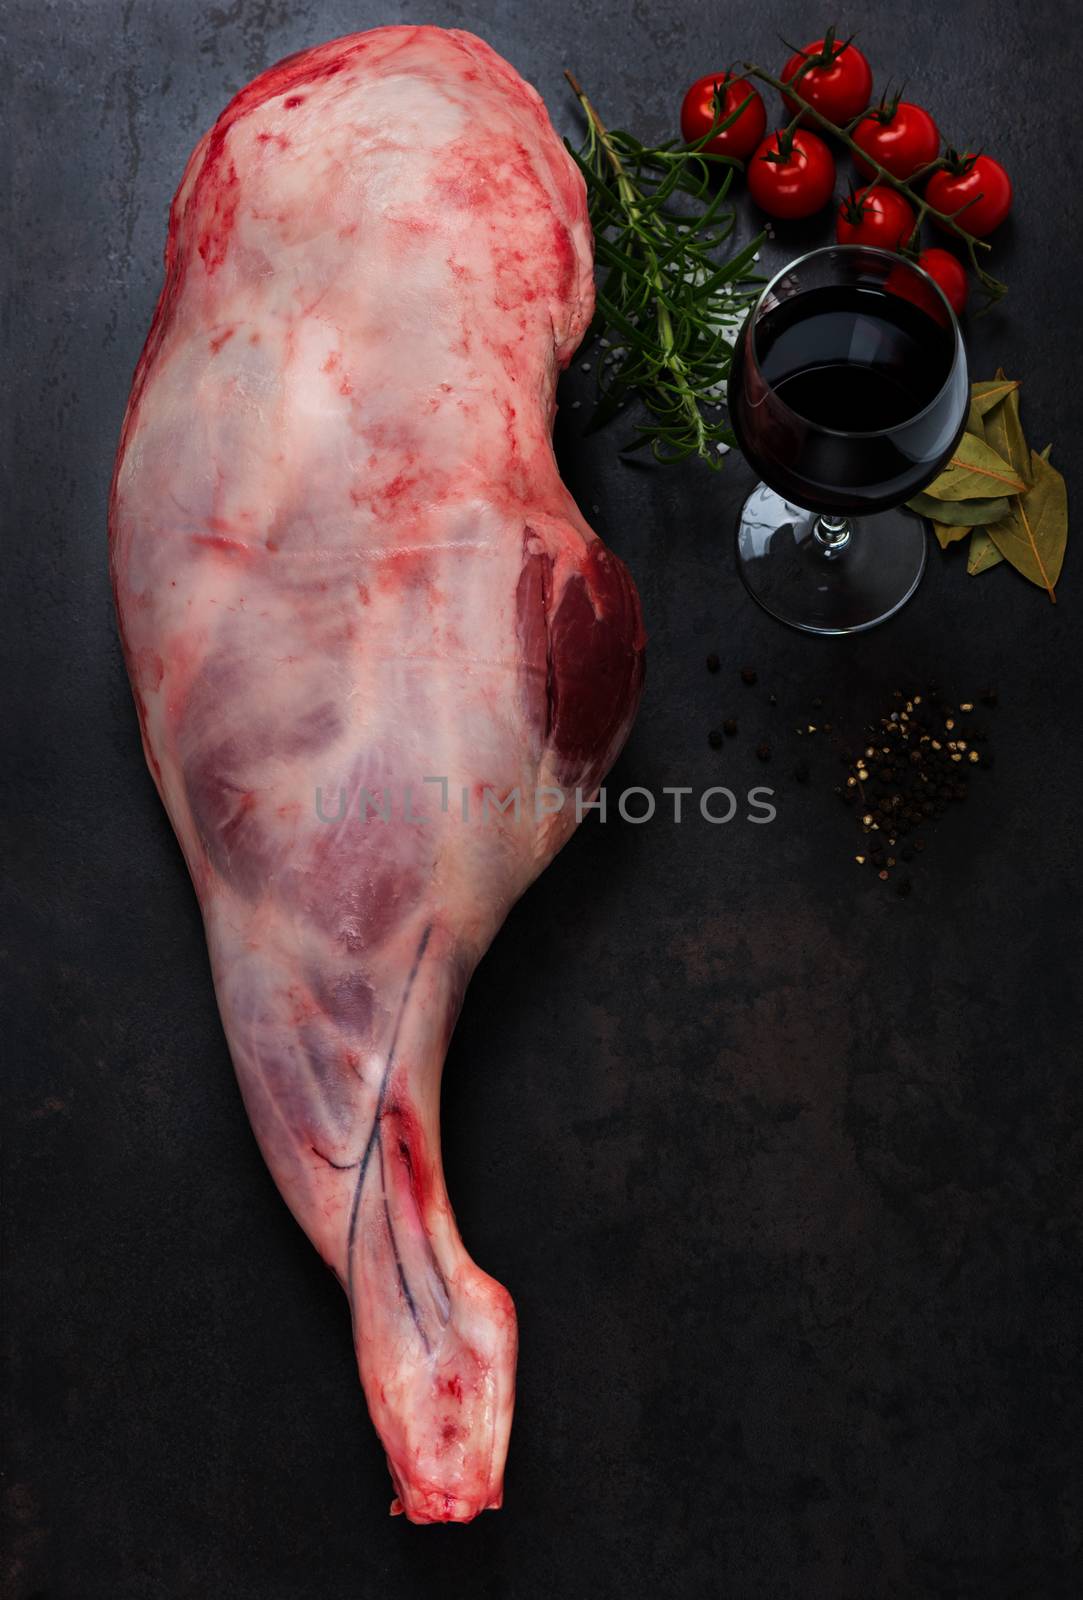 Raw lamb leg by Nanisimova